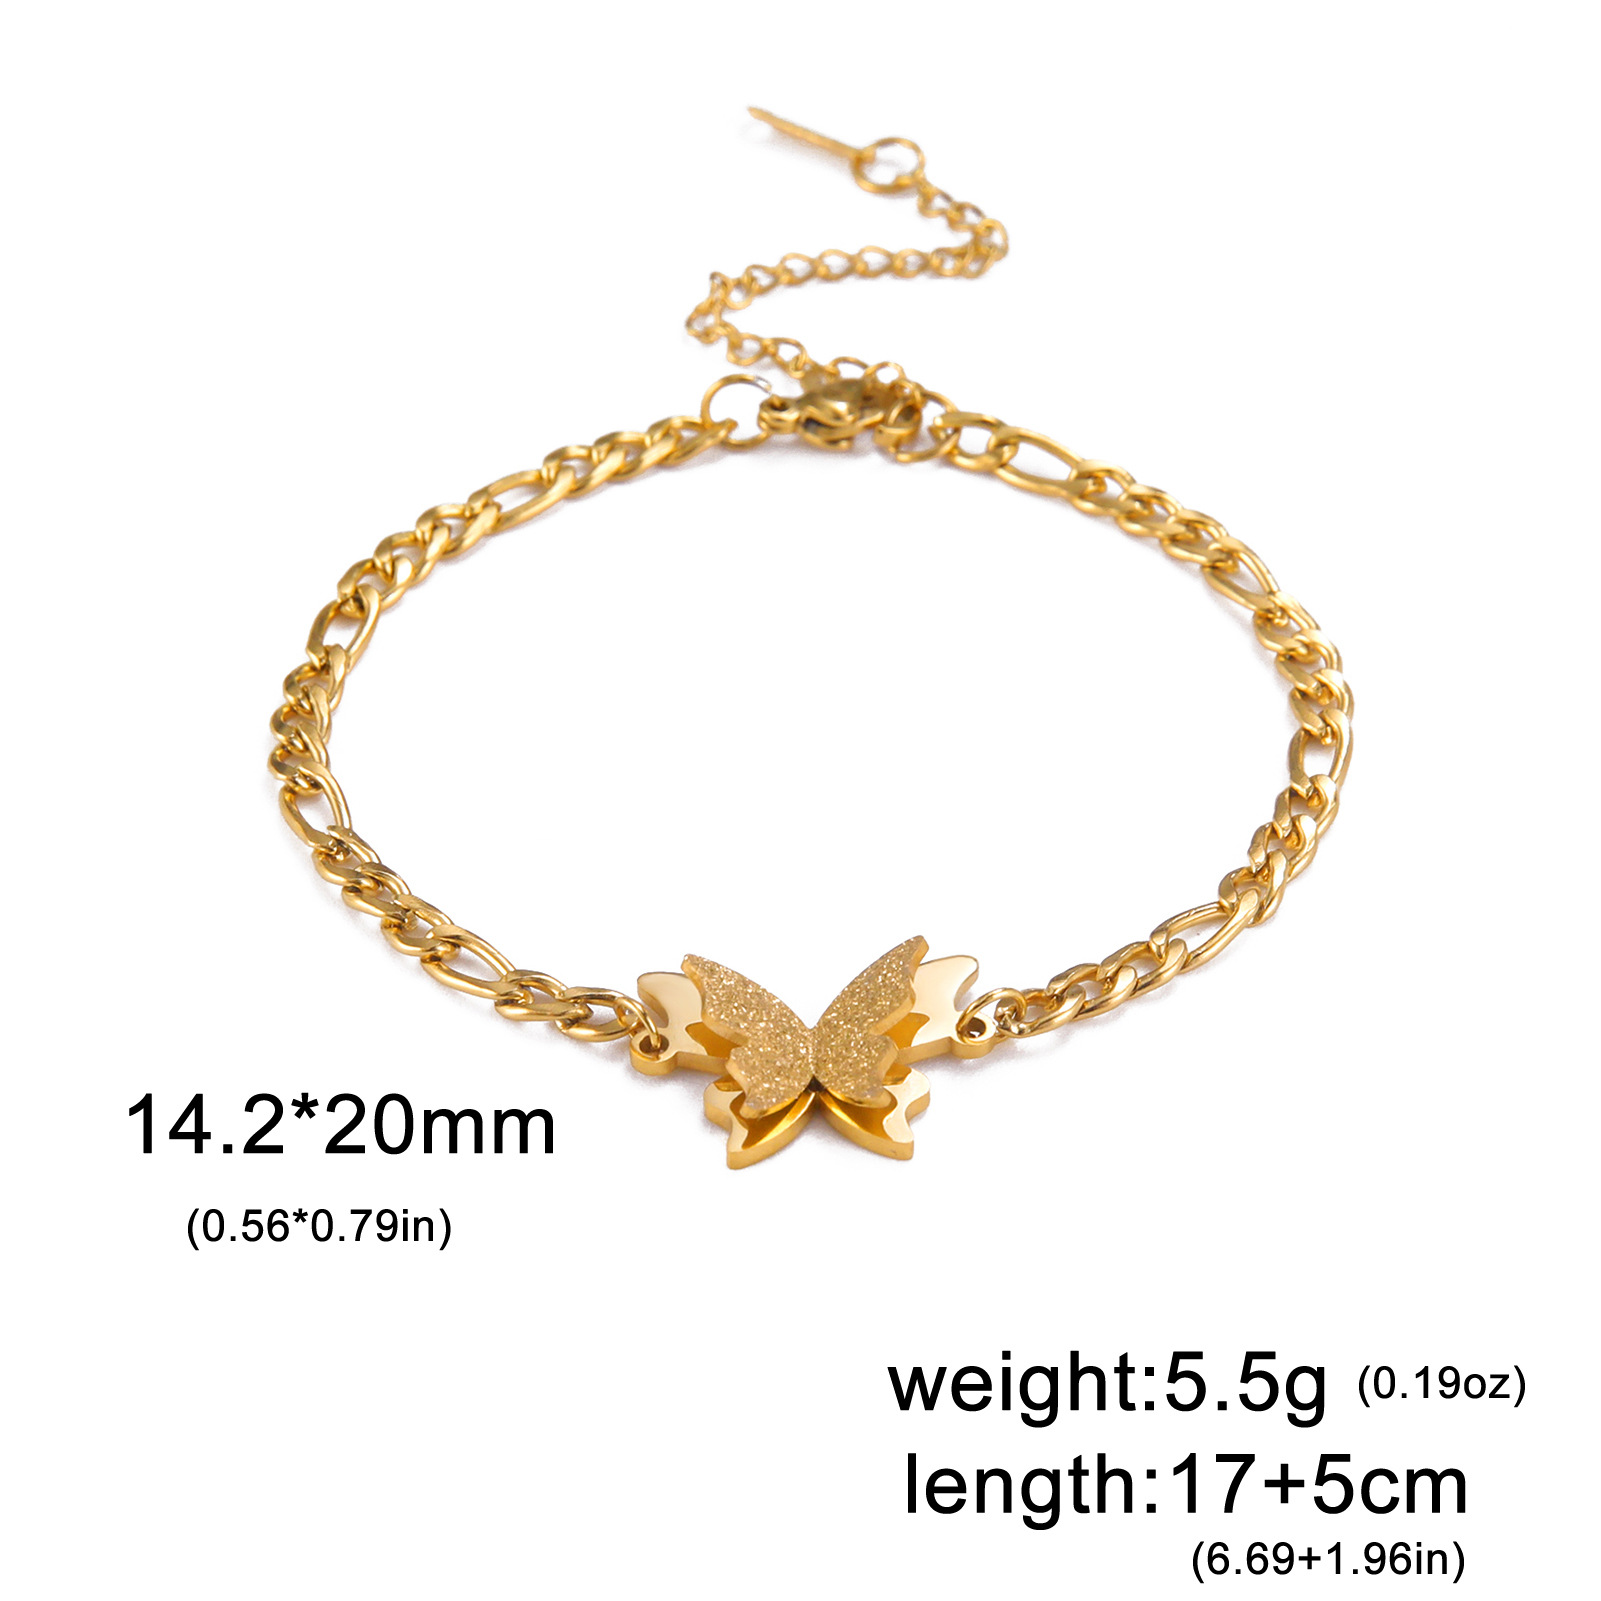 2:Gold Figaro bracelet